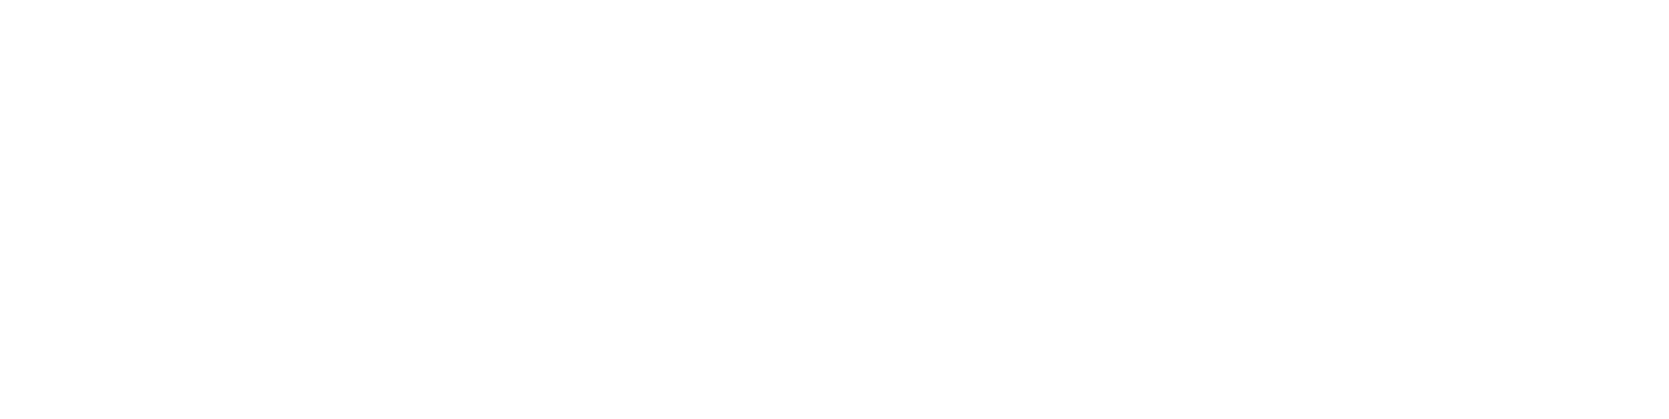 Etech logo white